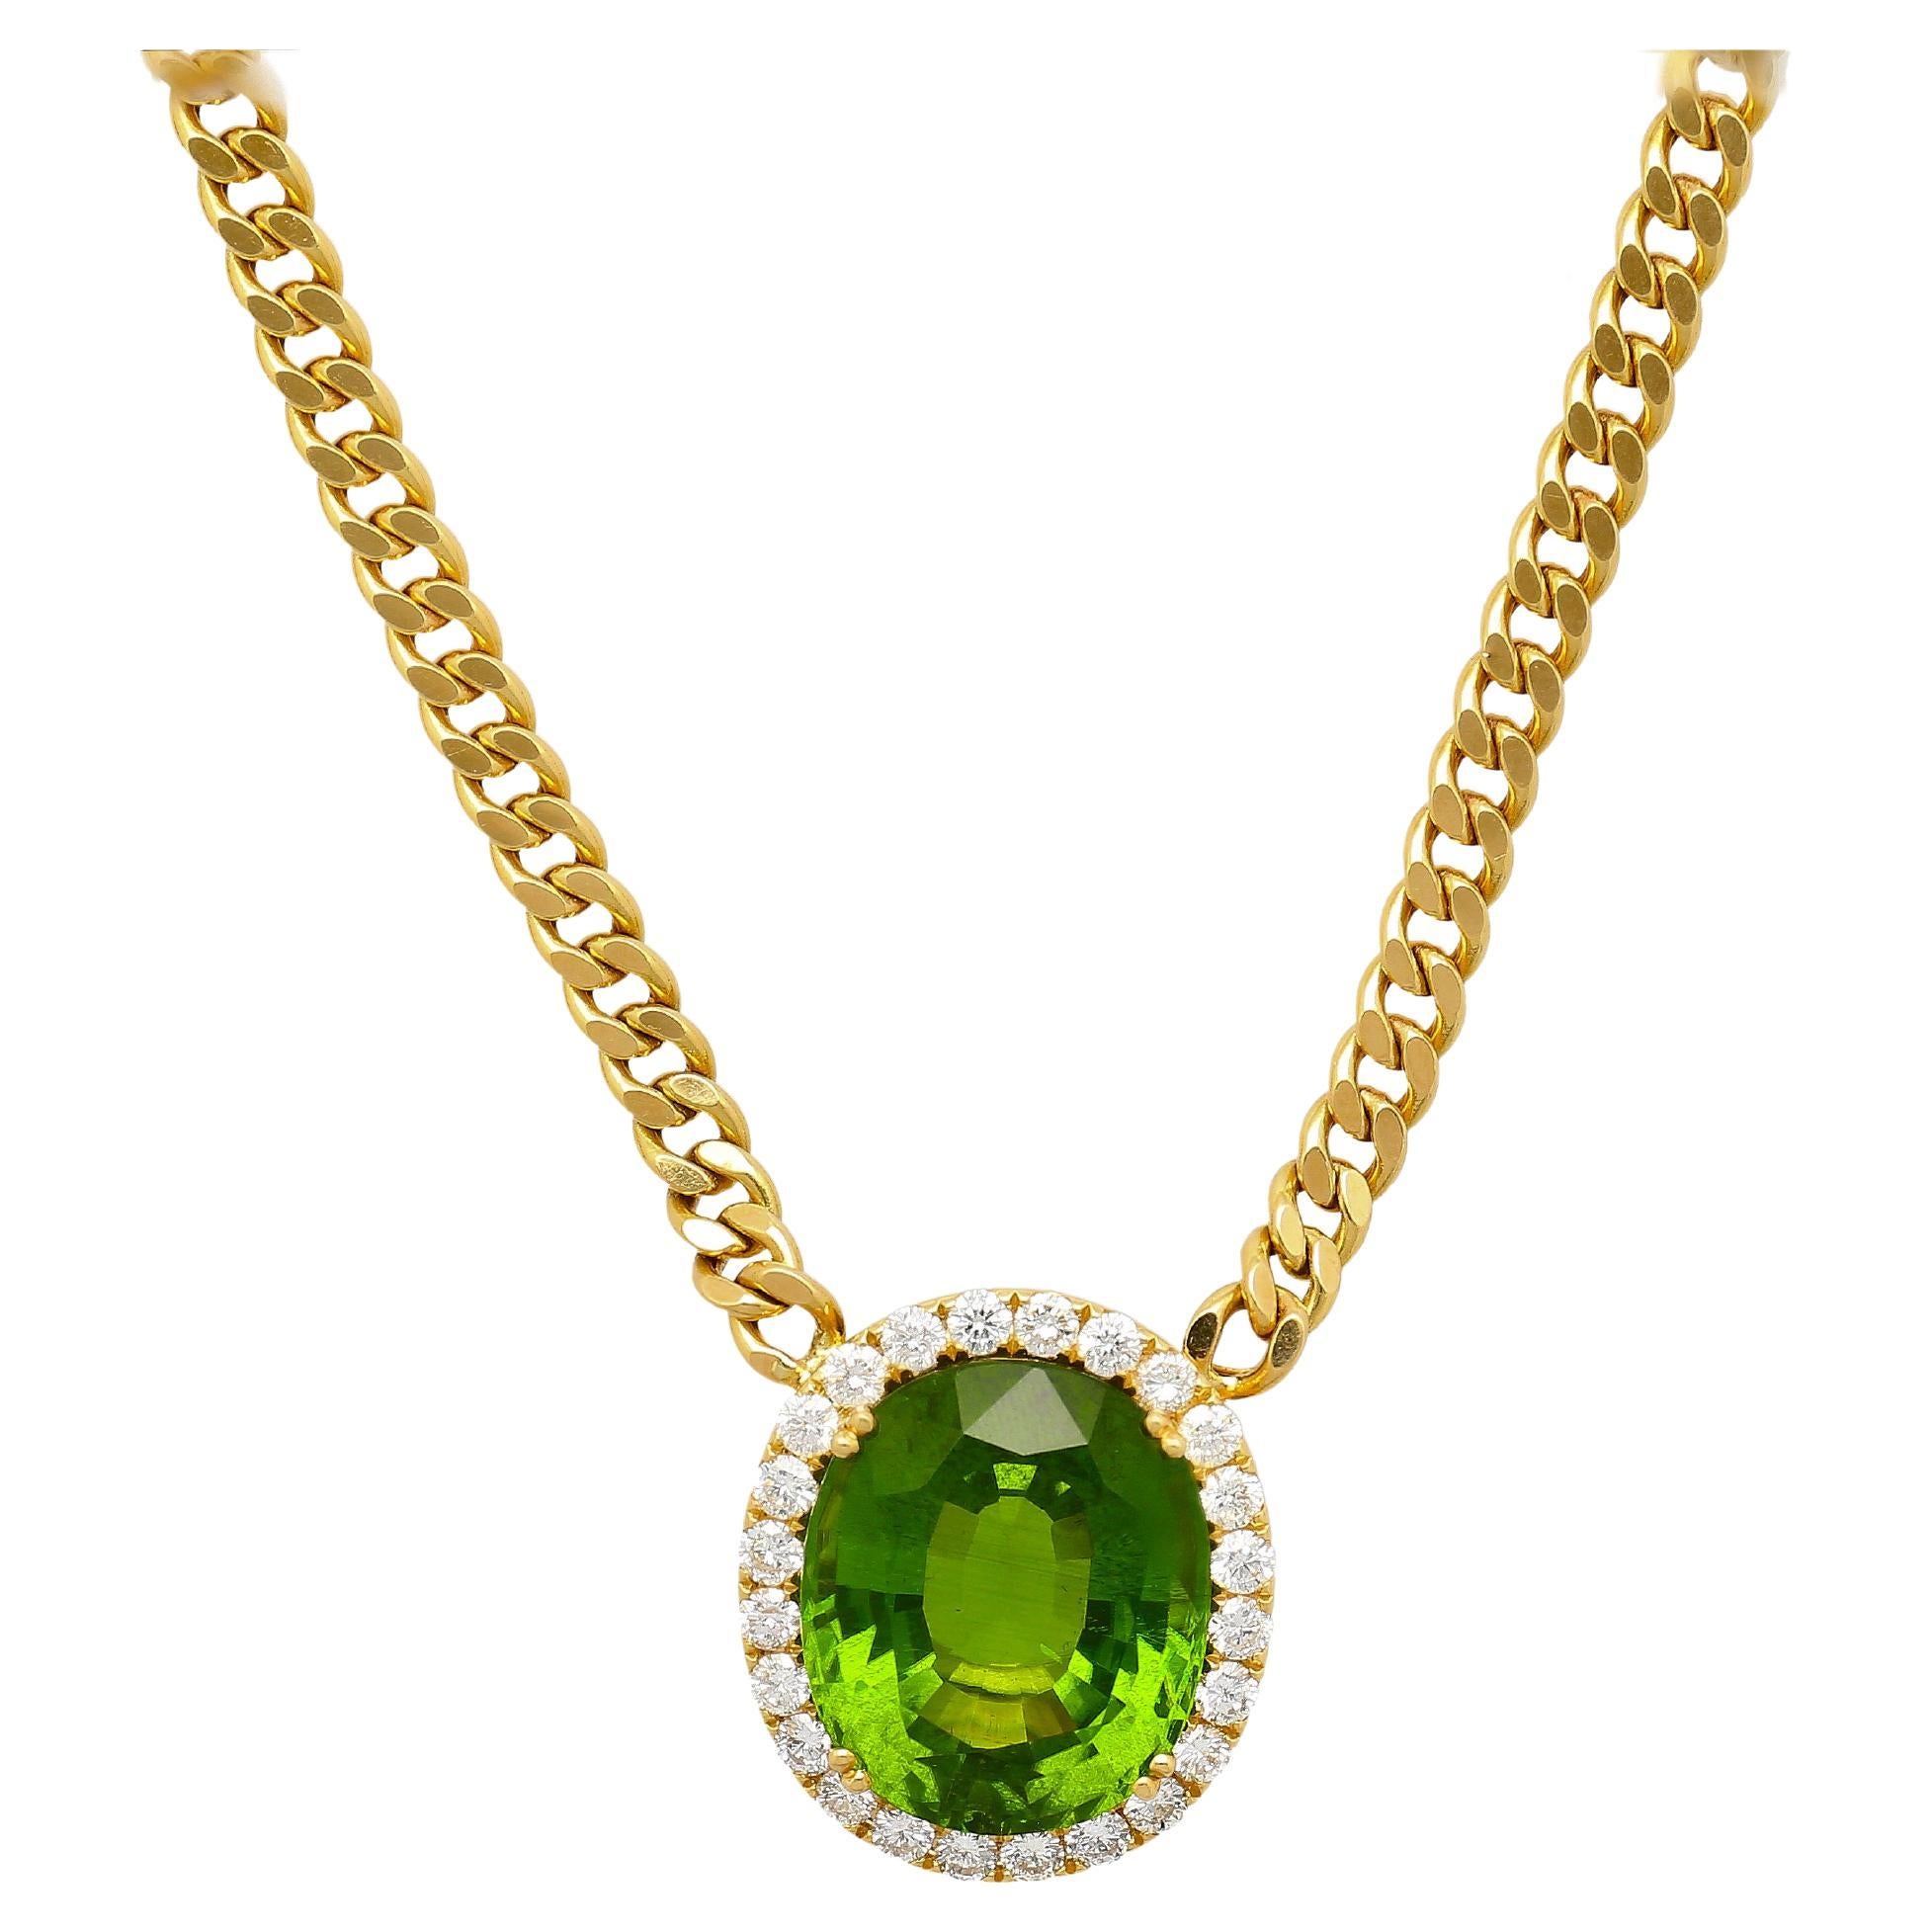 Pendentif en or 18 carats avec péridot vert de 51 carats et halo de diamants, chaîne cubaine